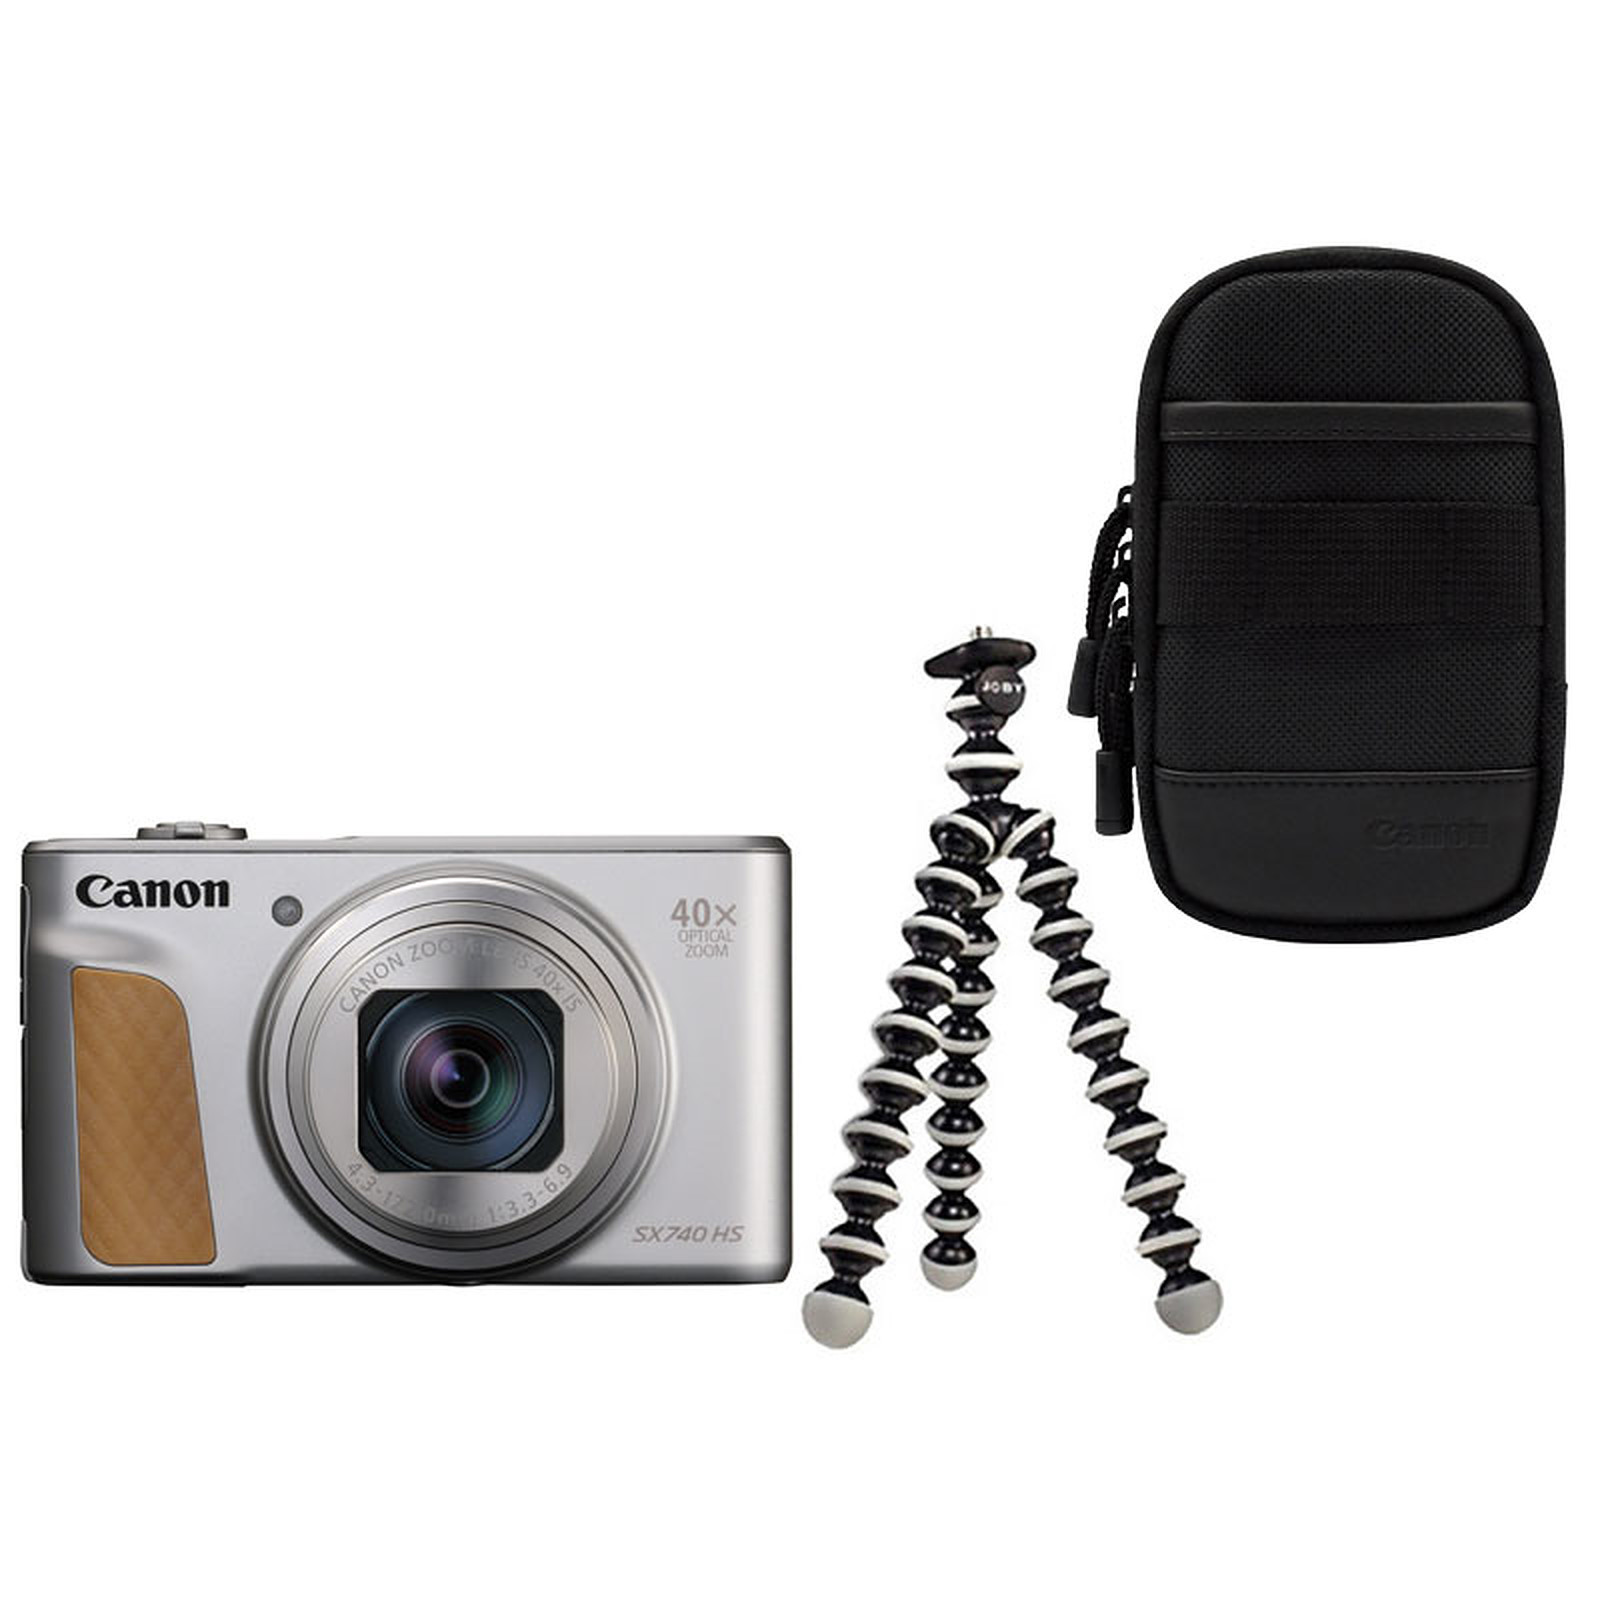 Canon PowerShot SX740 HS Argent + Etui + Gorillapod - Appareil photo numerique Canon